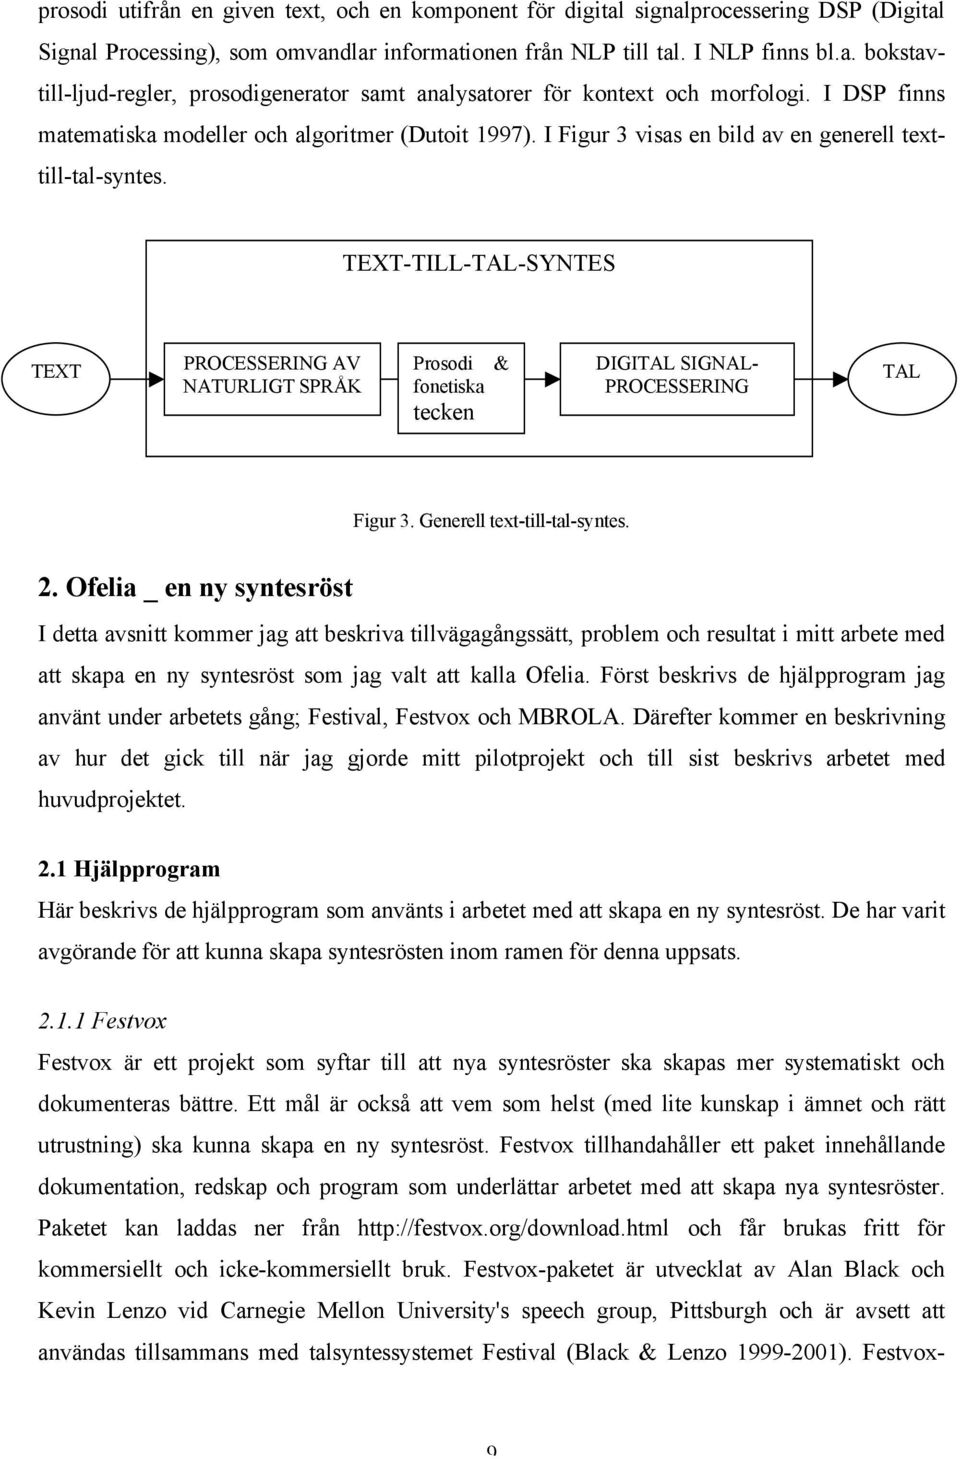 TEXT-TILL-TAL-SYNTES TEXT PROCESSERING AV NATURLIGT SPRÅK Prosodi fonetiska tecken & DIGITAL SIGNAL- PROCESSERING TAL Figur 3. Generell text-till-tal-syntes. 2.